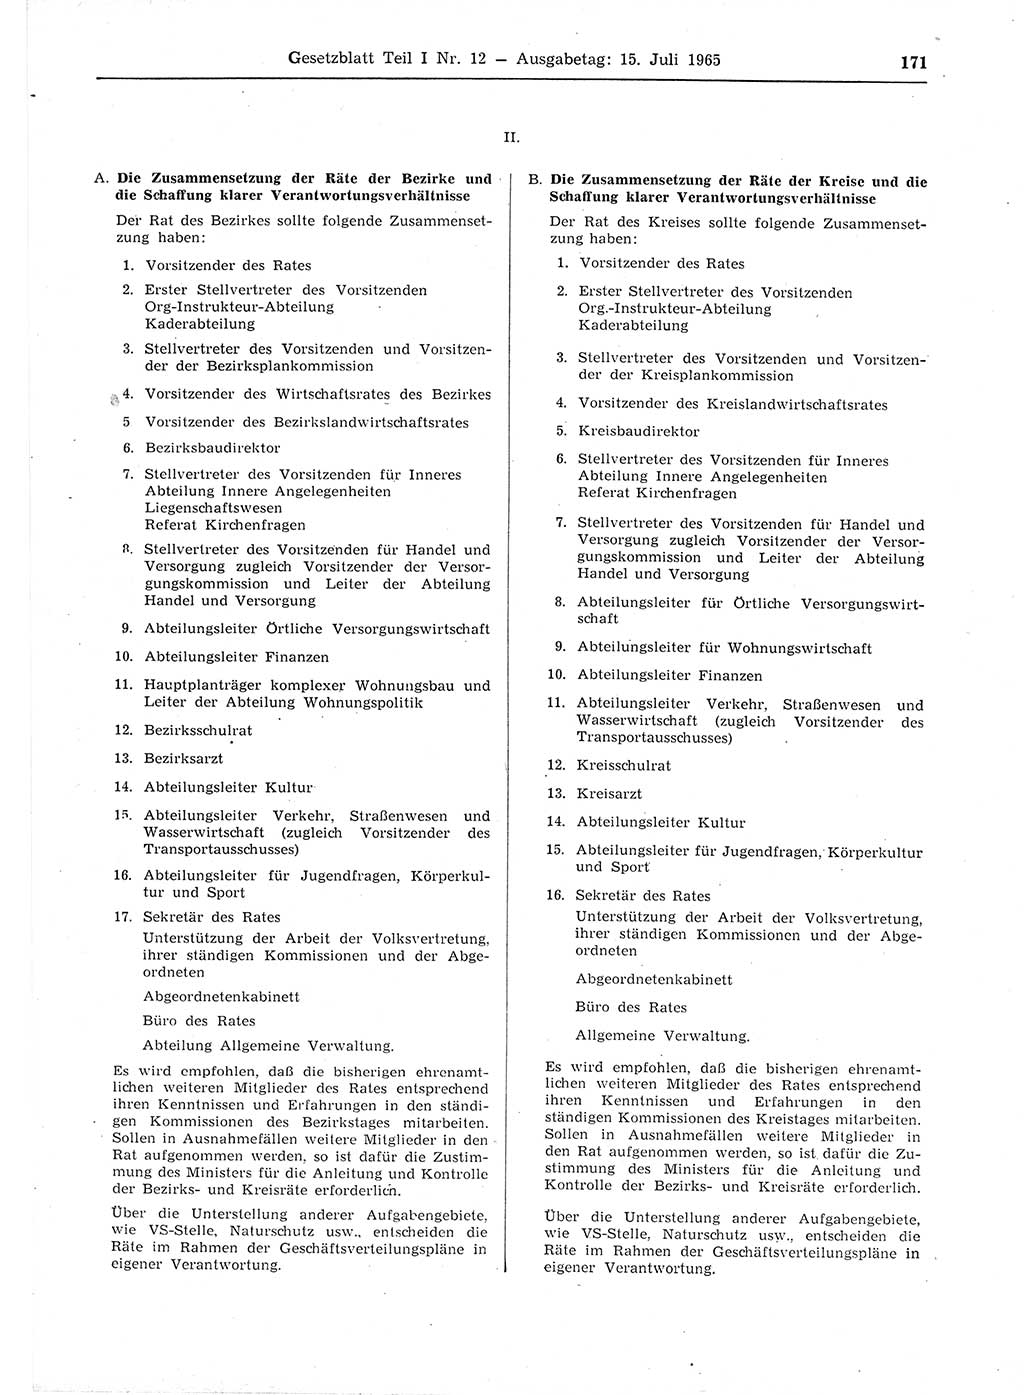 Gesetzblatt (GBl.) der Deutschen Demokratischen Republik (DDR) Teil Ⅰ 1965, Seite 171 (GBl. DDR Ⅰ 1965, S. 171)